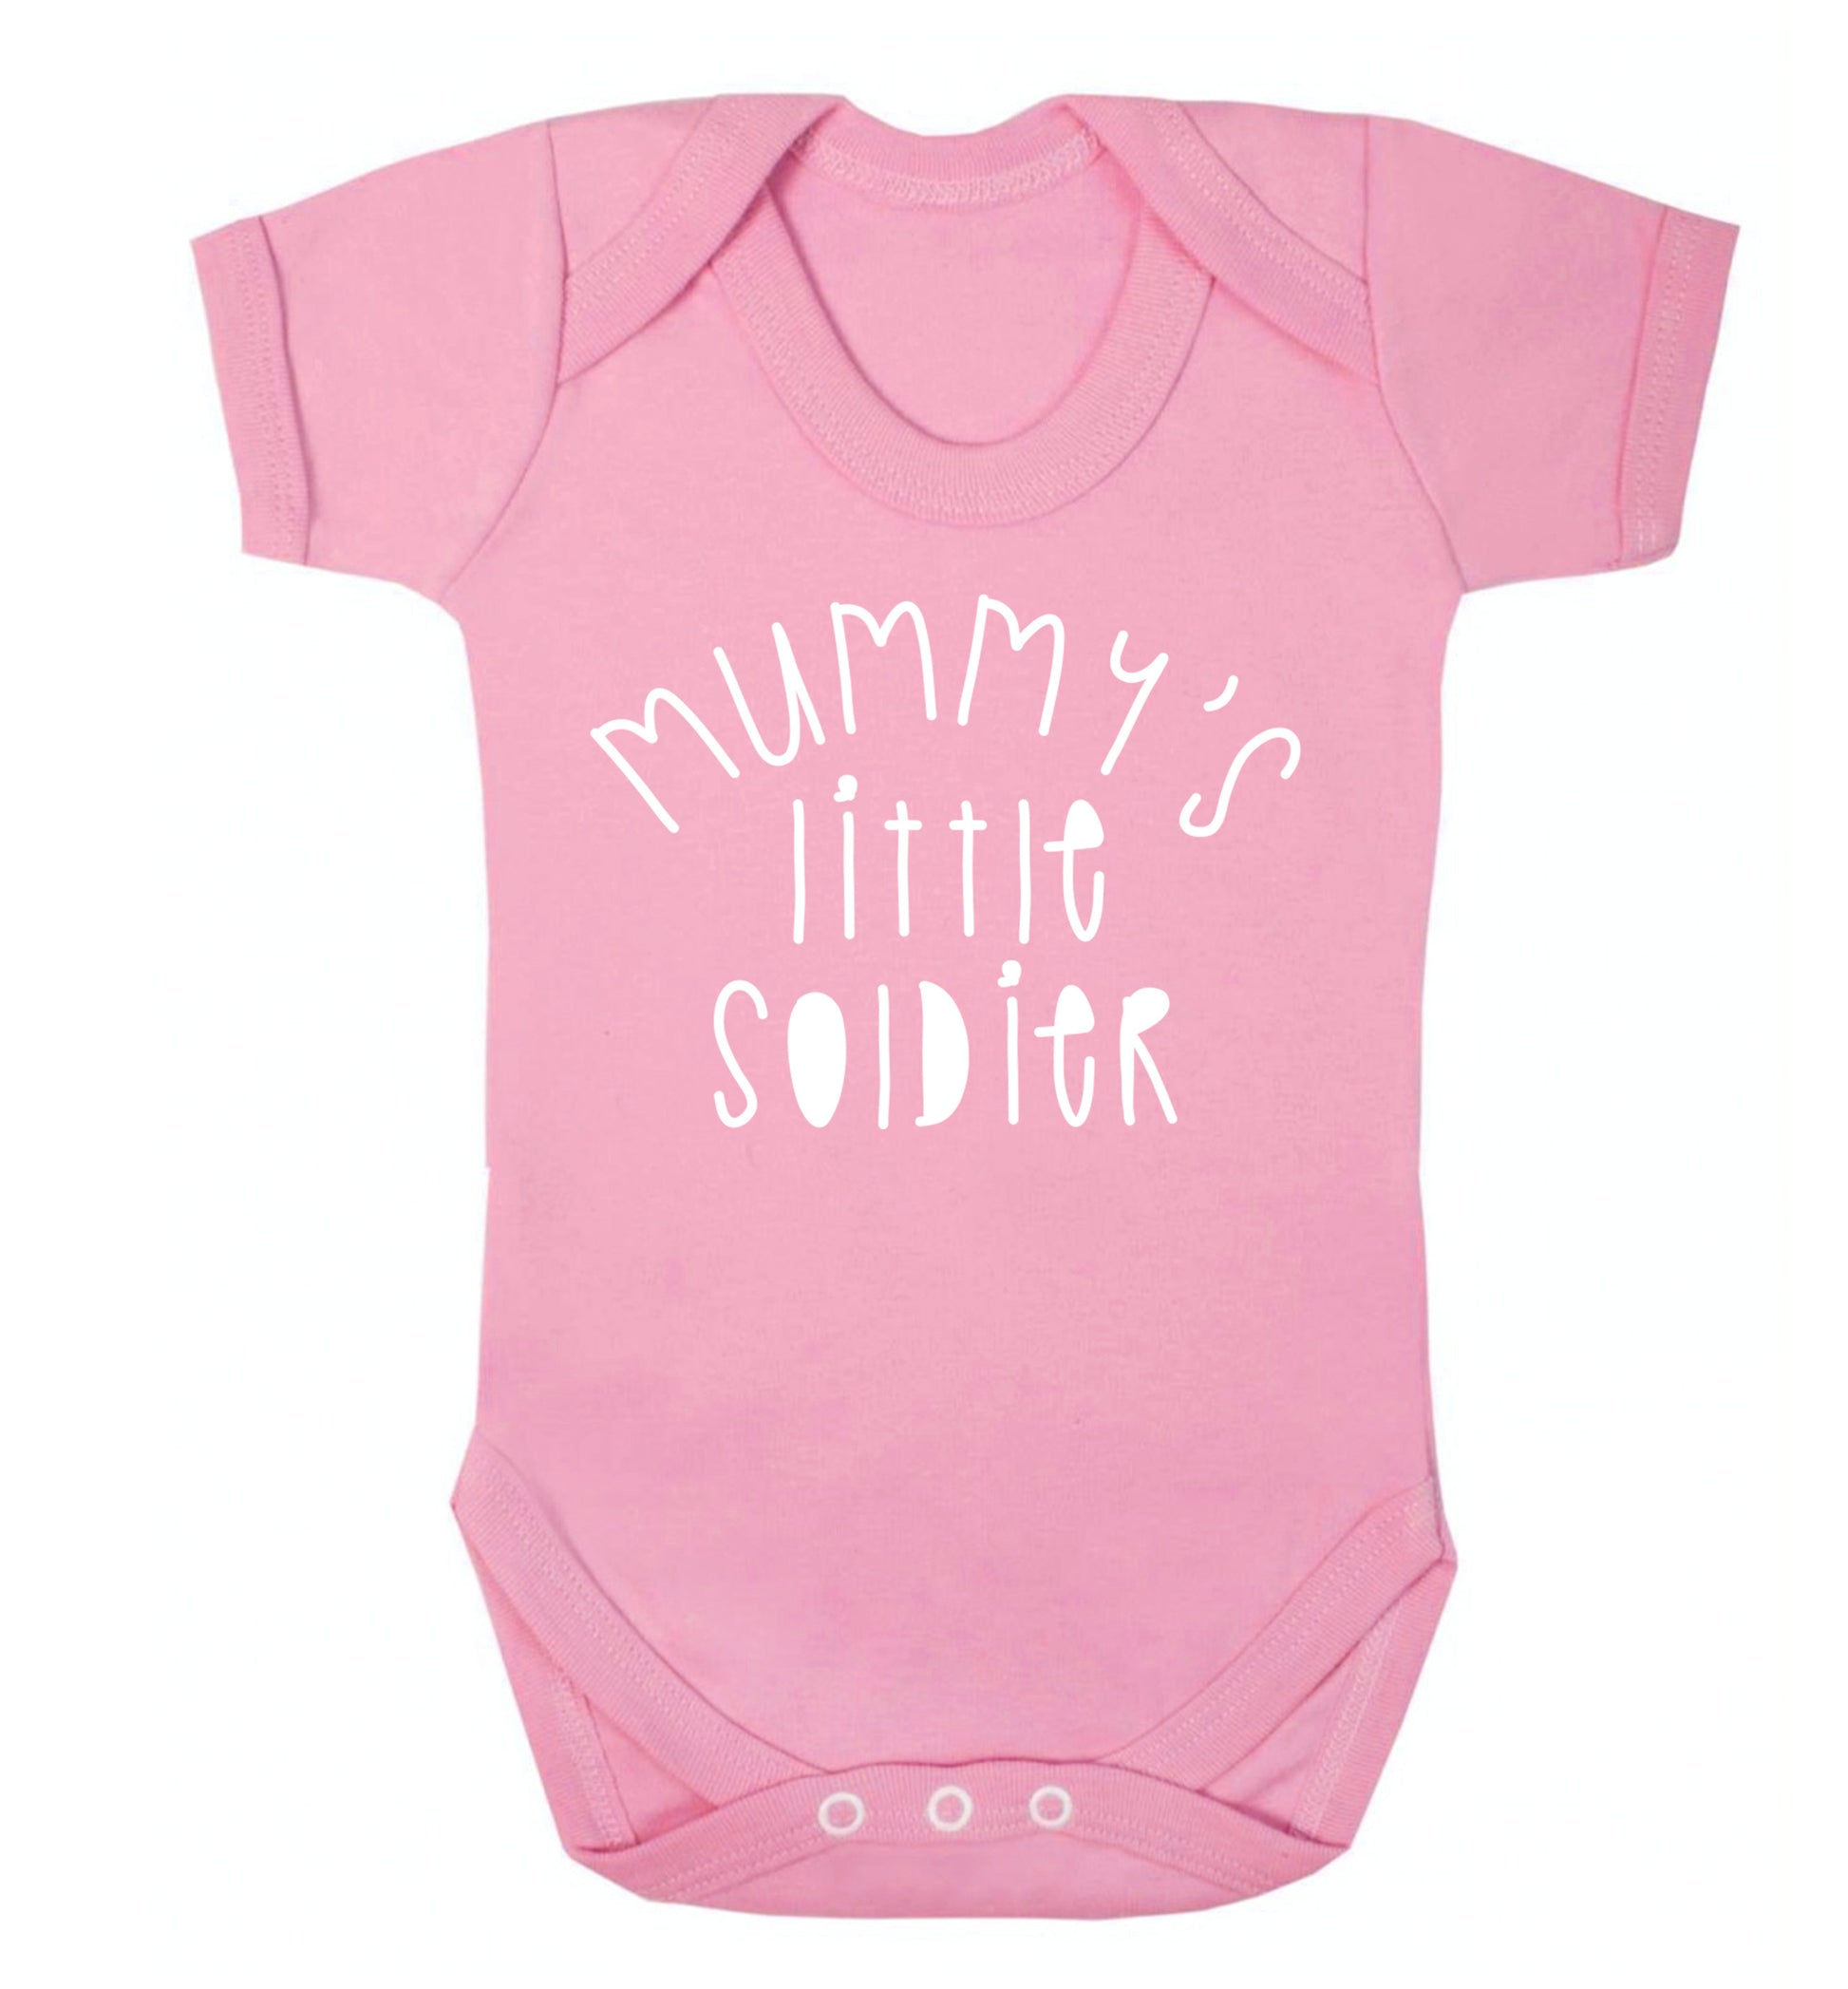 Mummy's little soldier Baby Vest pale pink 18-24 months